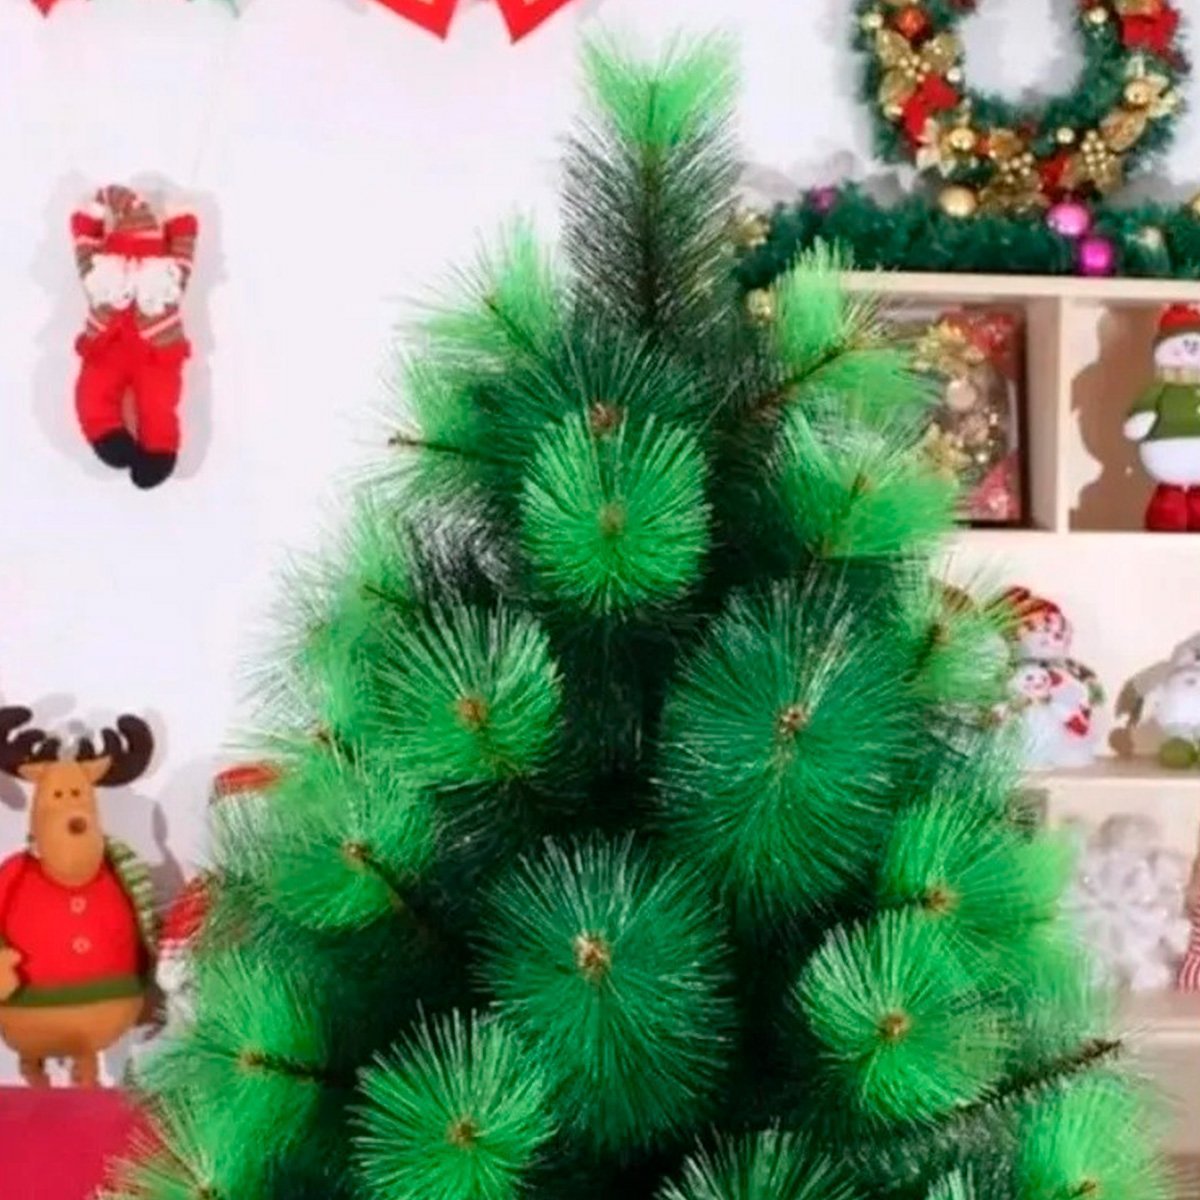 Arvore De Natal Verde Pinheiro Luxo 1,80m C/834 Galhos